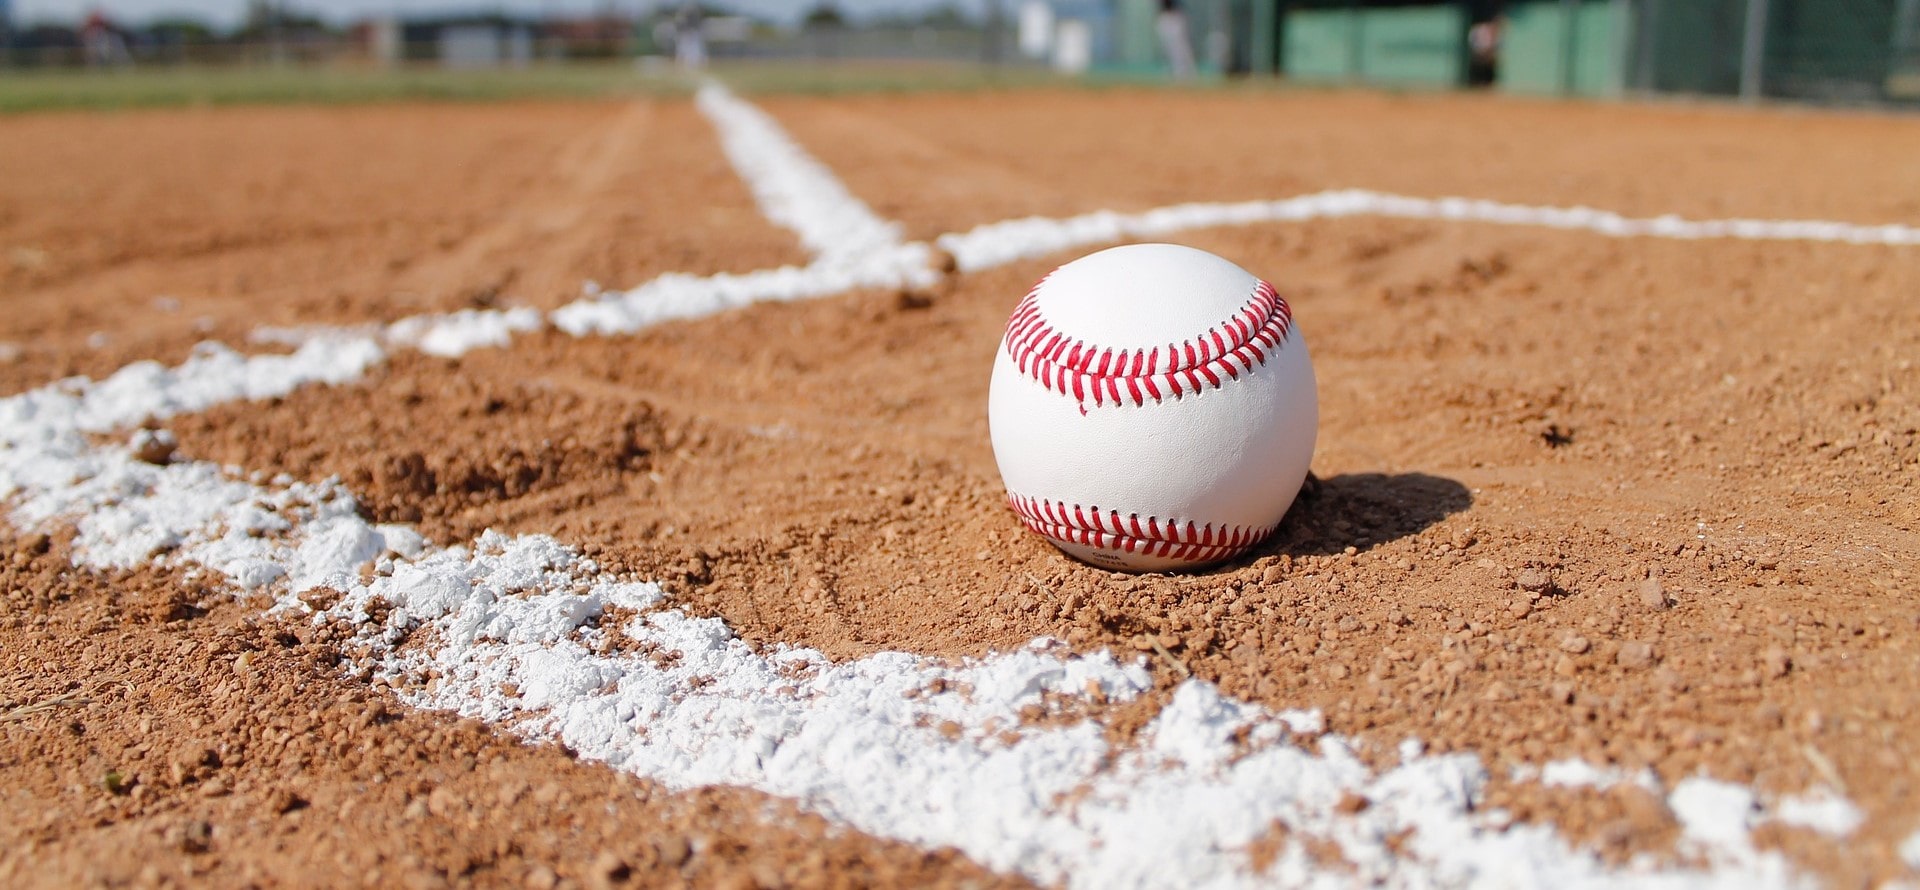 Visit Fort Myers for the Roy Hobbs Baseball World Series